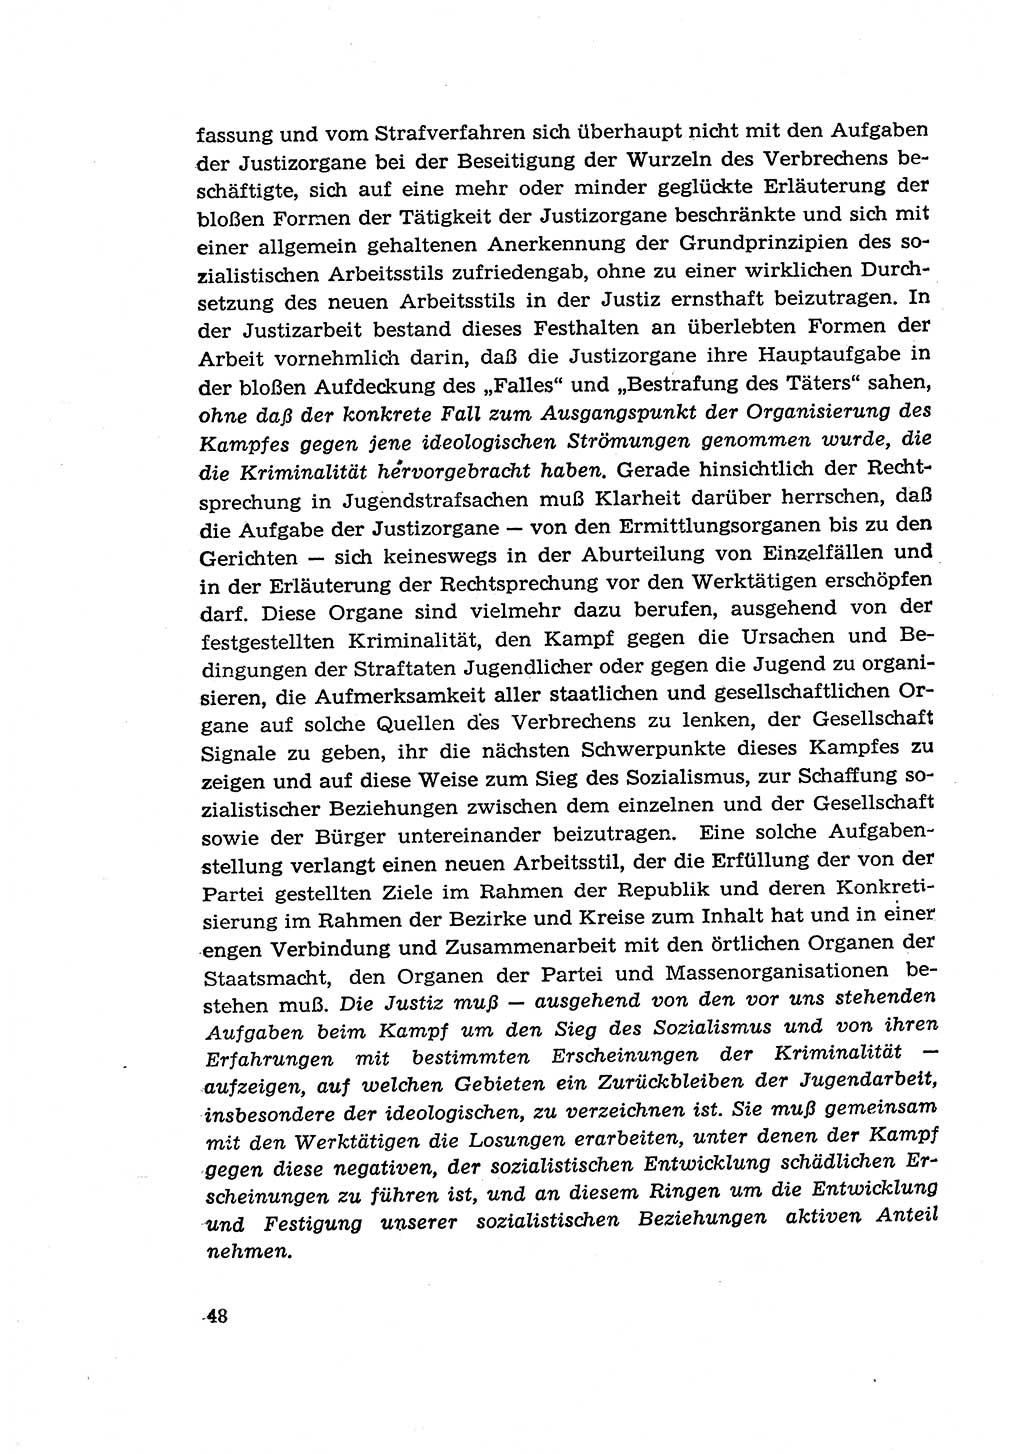 Zur Entwicklung des sozialistischen Strafrechts der Deutschen Demokratischen Republik (DDR) 1960, Seite 48 (Entw. soz. Strafr. DDR 1960, S. 48)